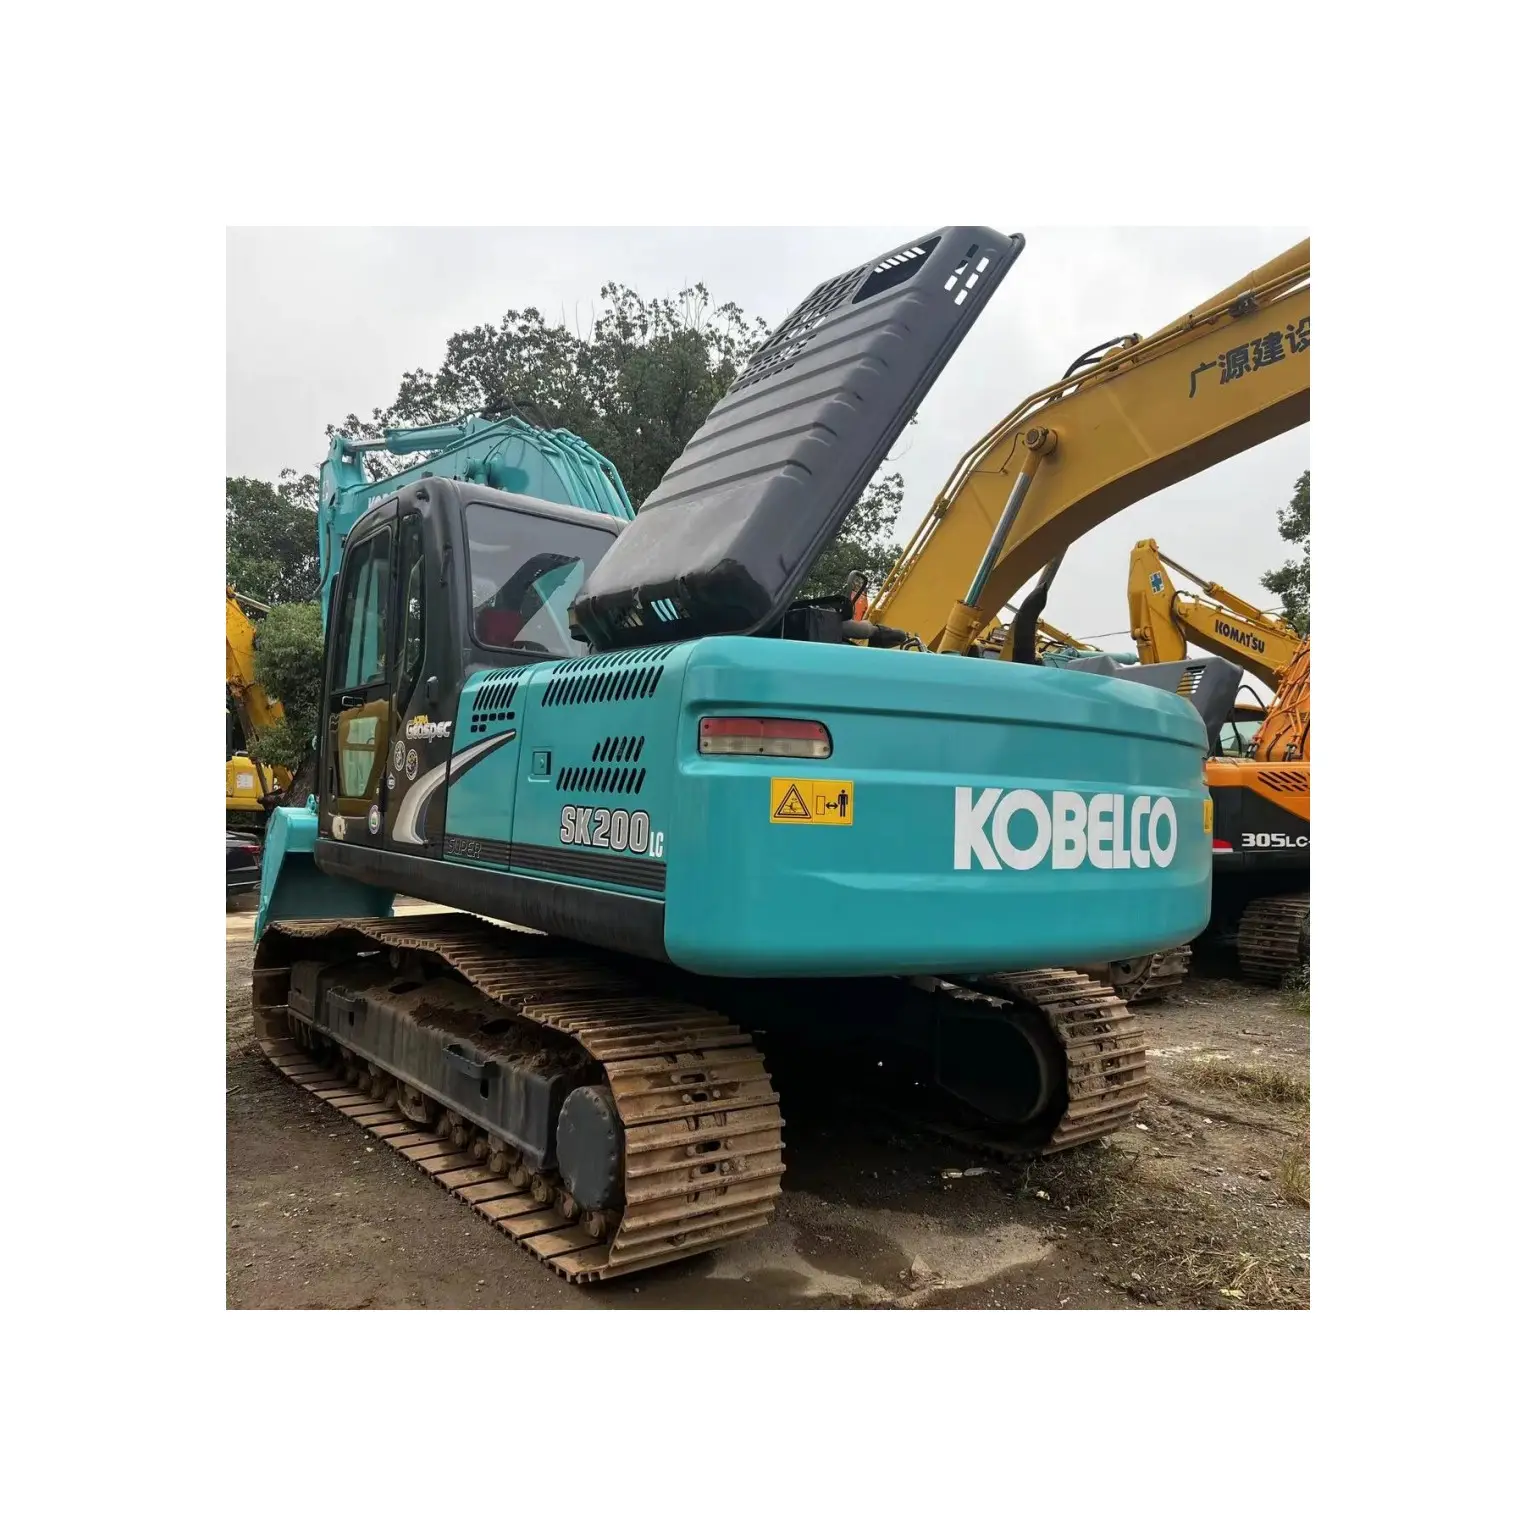 Escavadeira KOBELCO SK200 usada original em boas condições, escavadeira hidráulica de esteira, venda barata com certificados CE/EPA